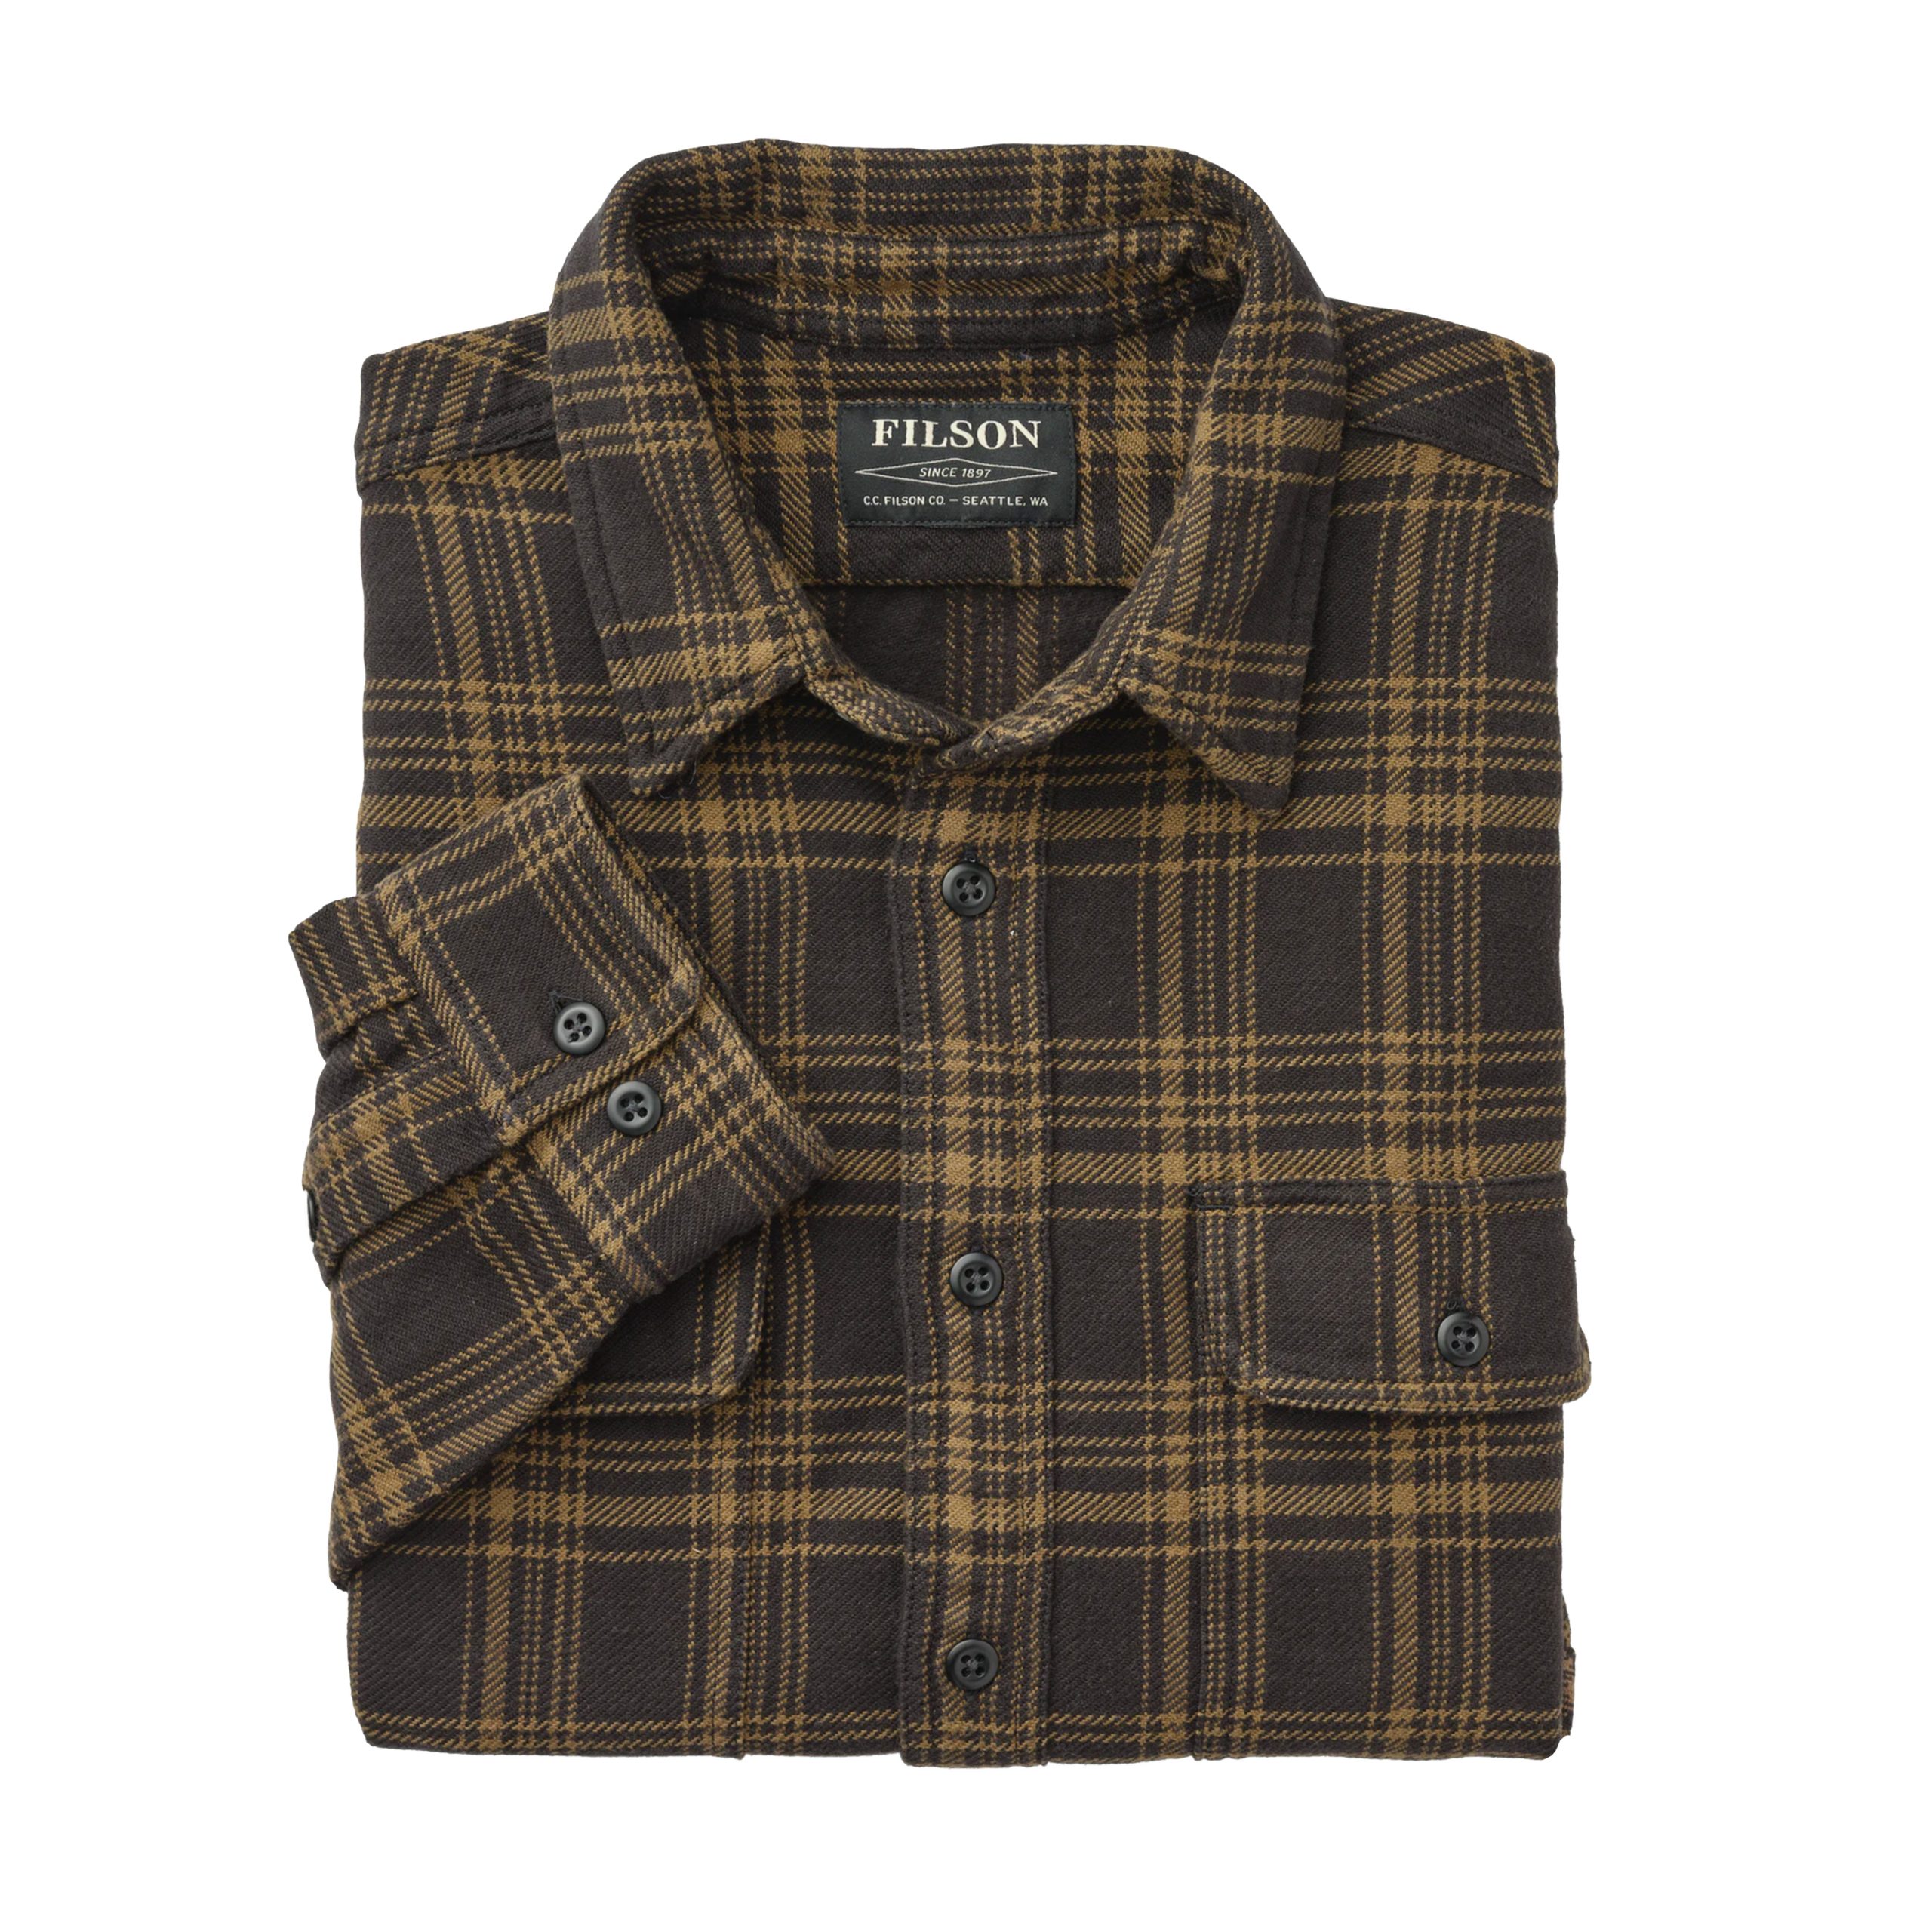 Vintage Flannel Work Shirt Black/Olive – B74